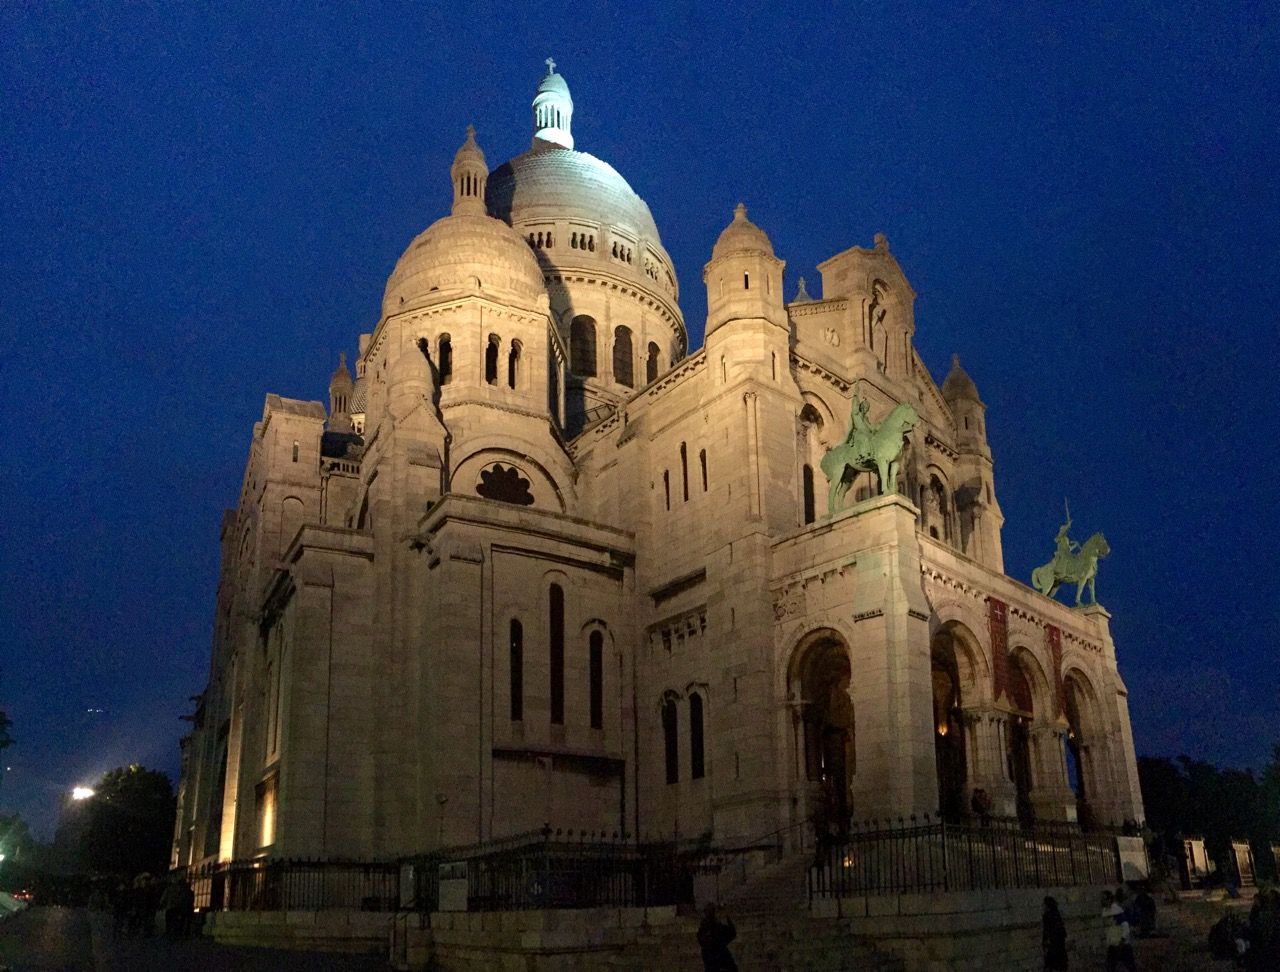 Sacré cœur Basilica lit up at night.